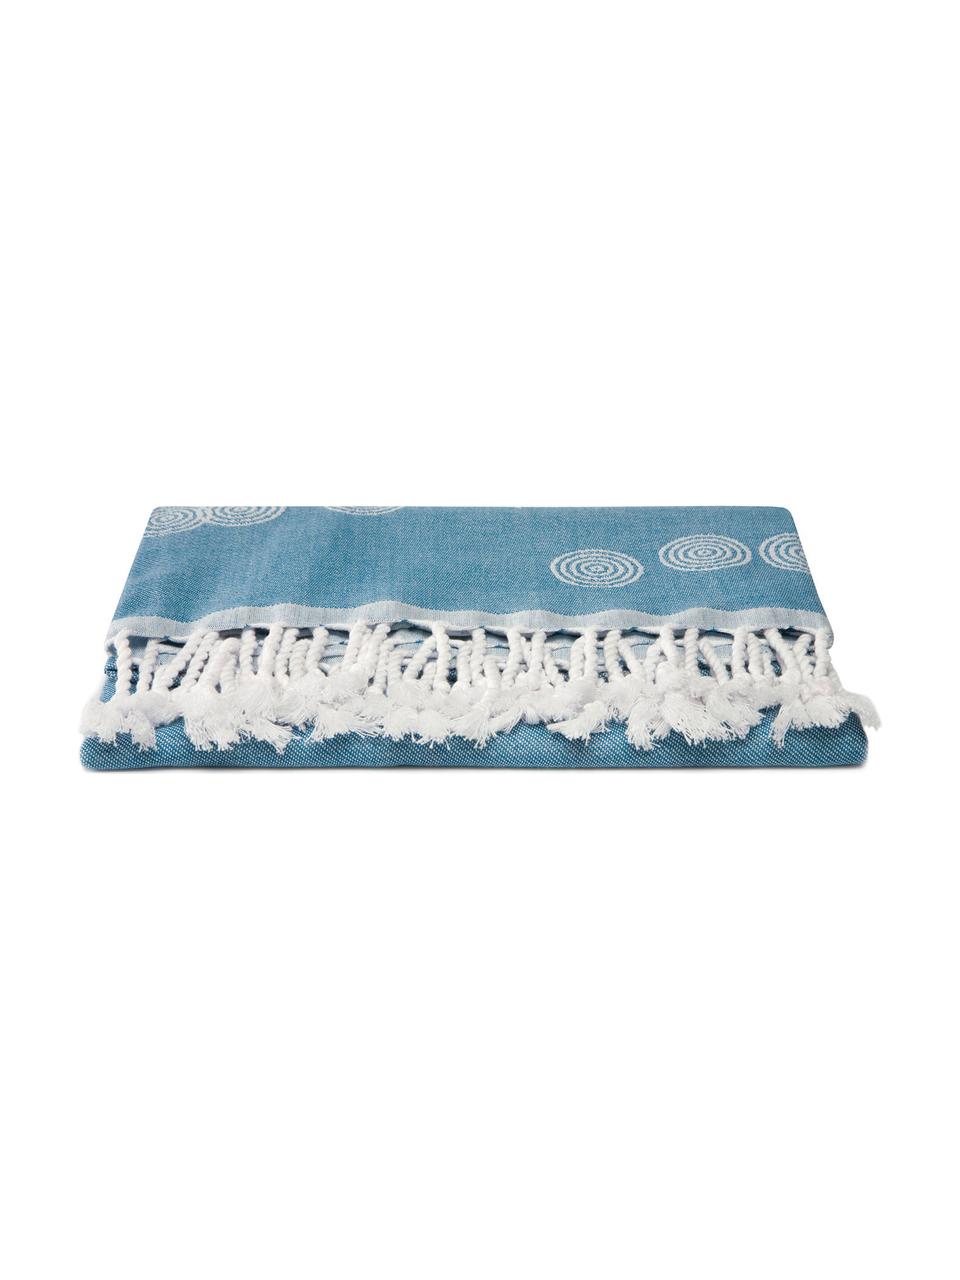 Hamamdoek Pisces, Katoen
lichte stofkwaliteit, 210 g/m², Blauw, wit, 90 x 180 cm